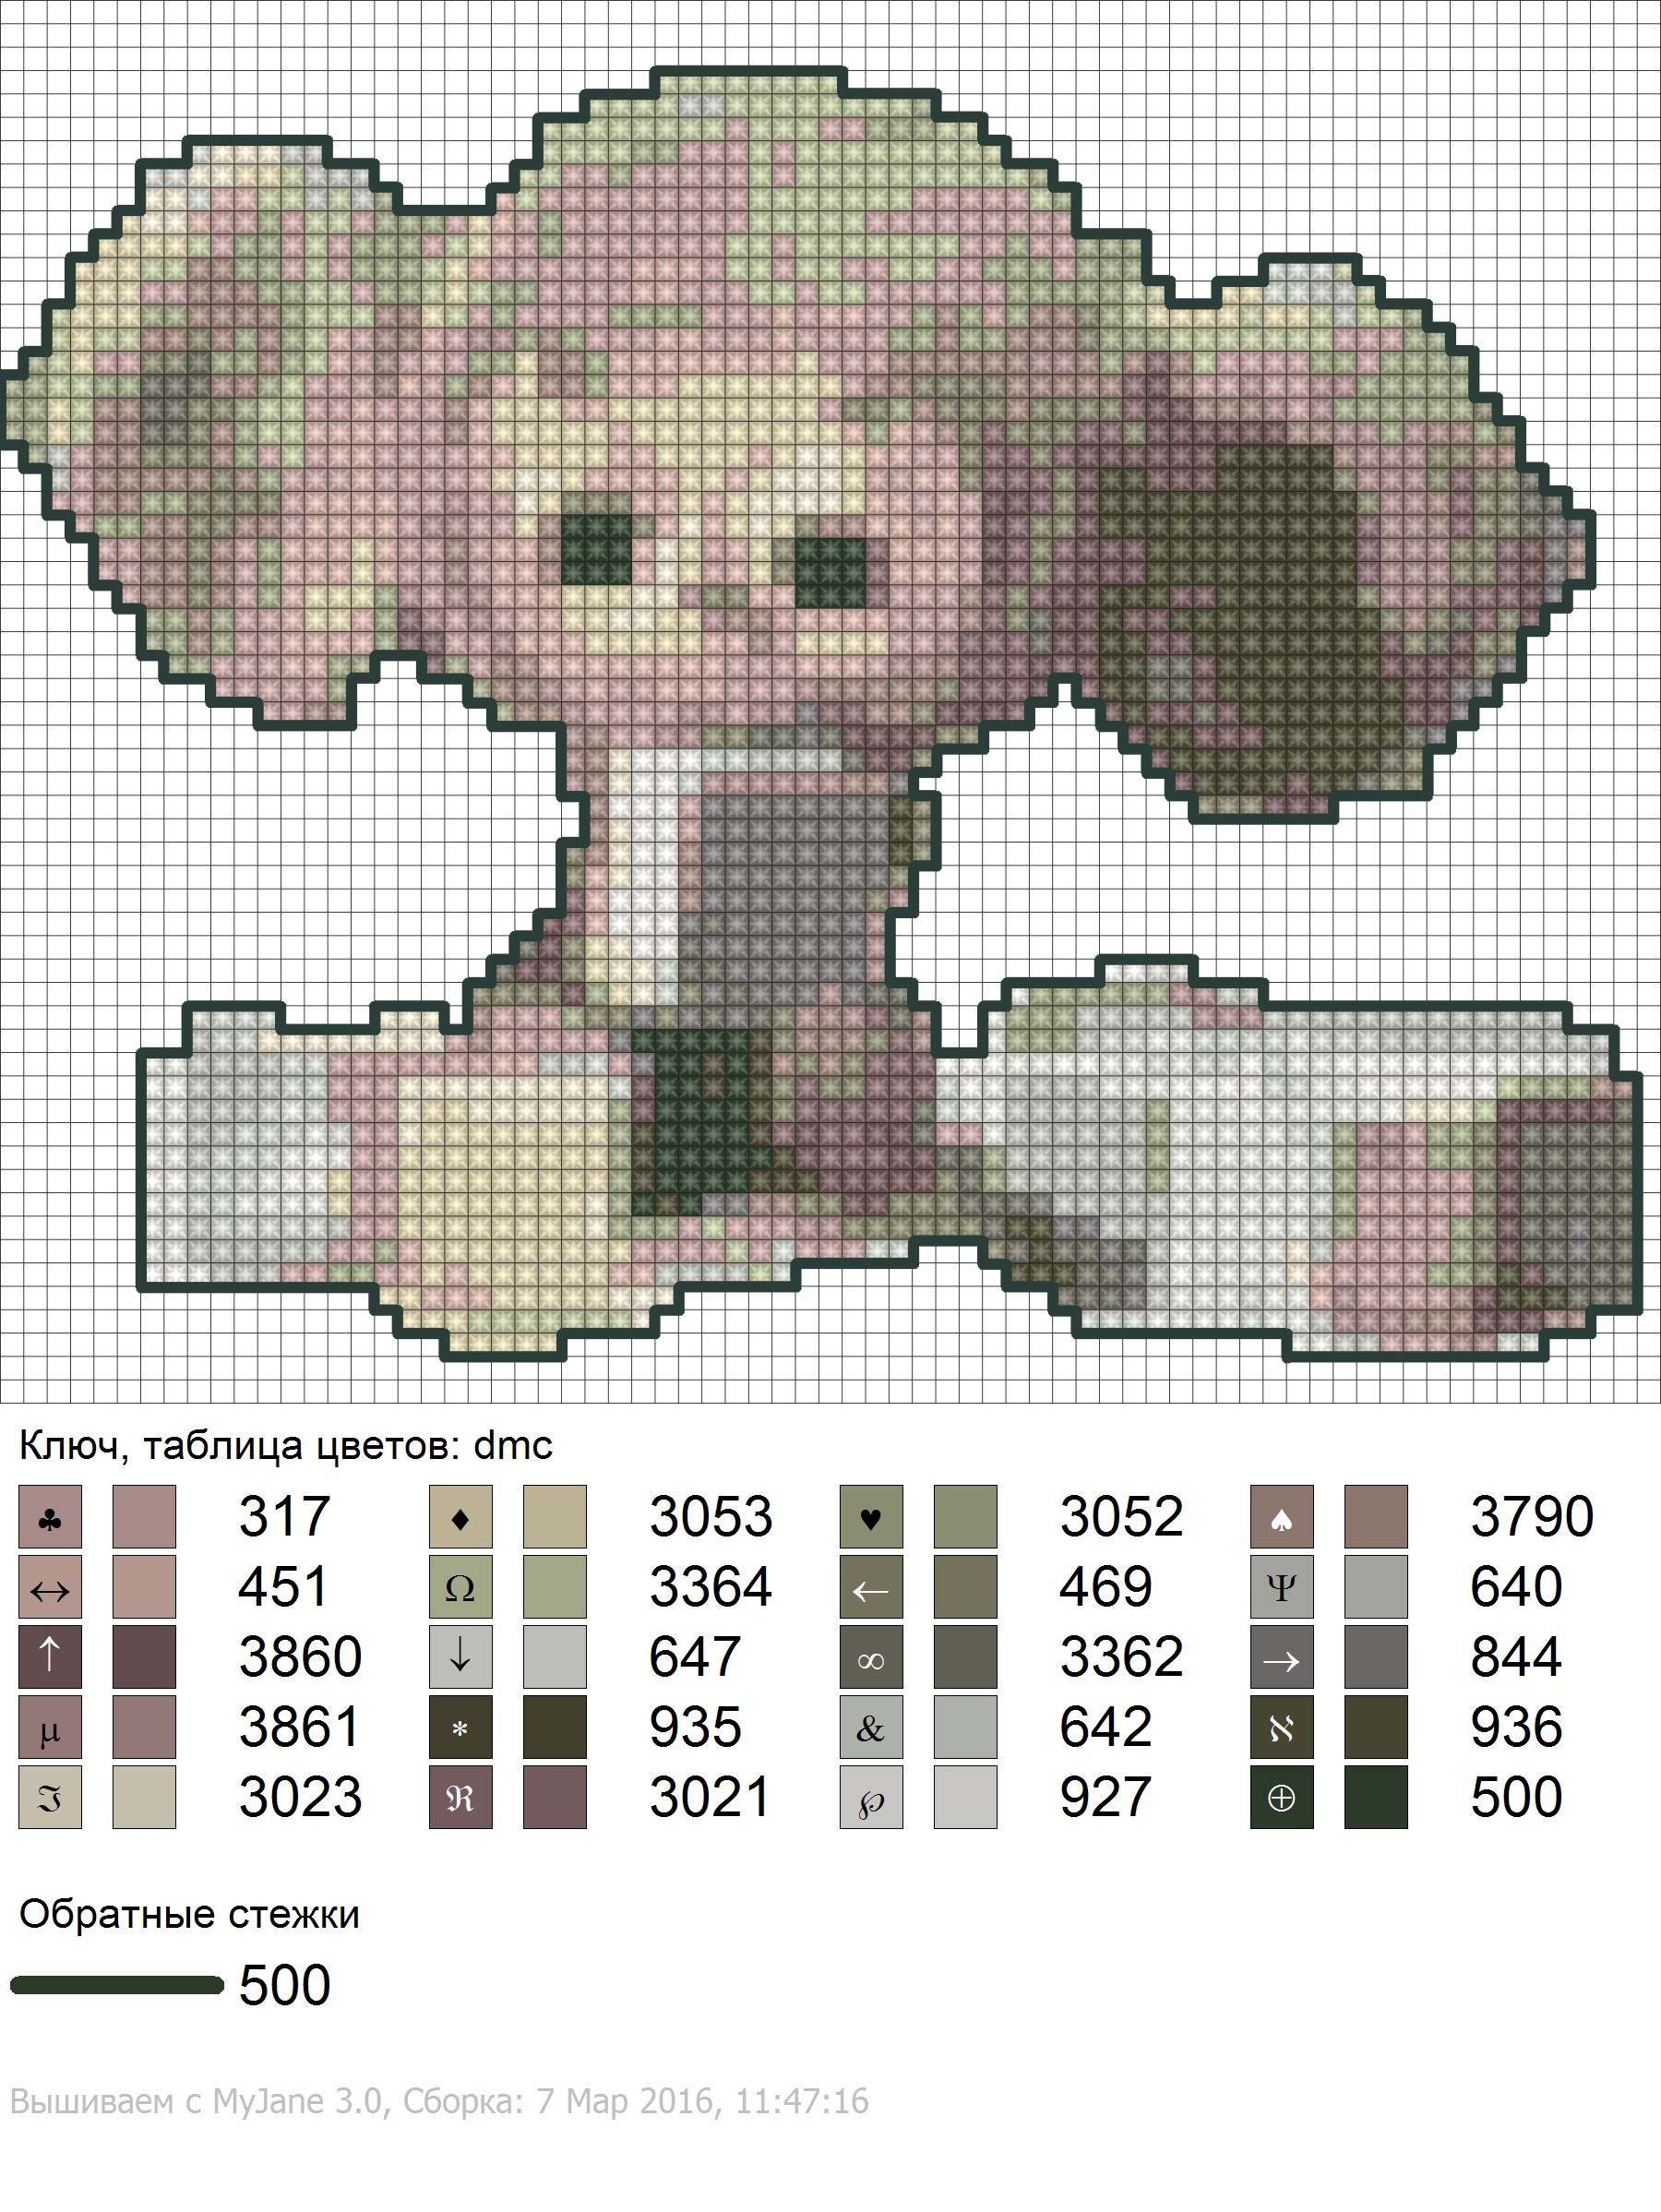 Программа Бисерок 2.0. Создание схем вышивки бисером из любых фотографий и картинок 0 руб.